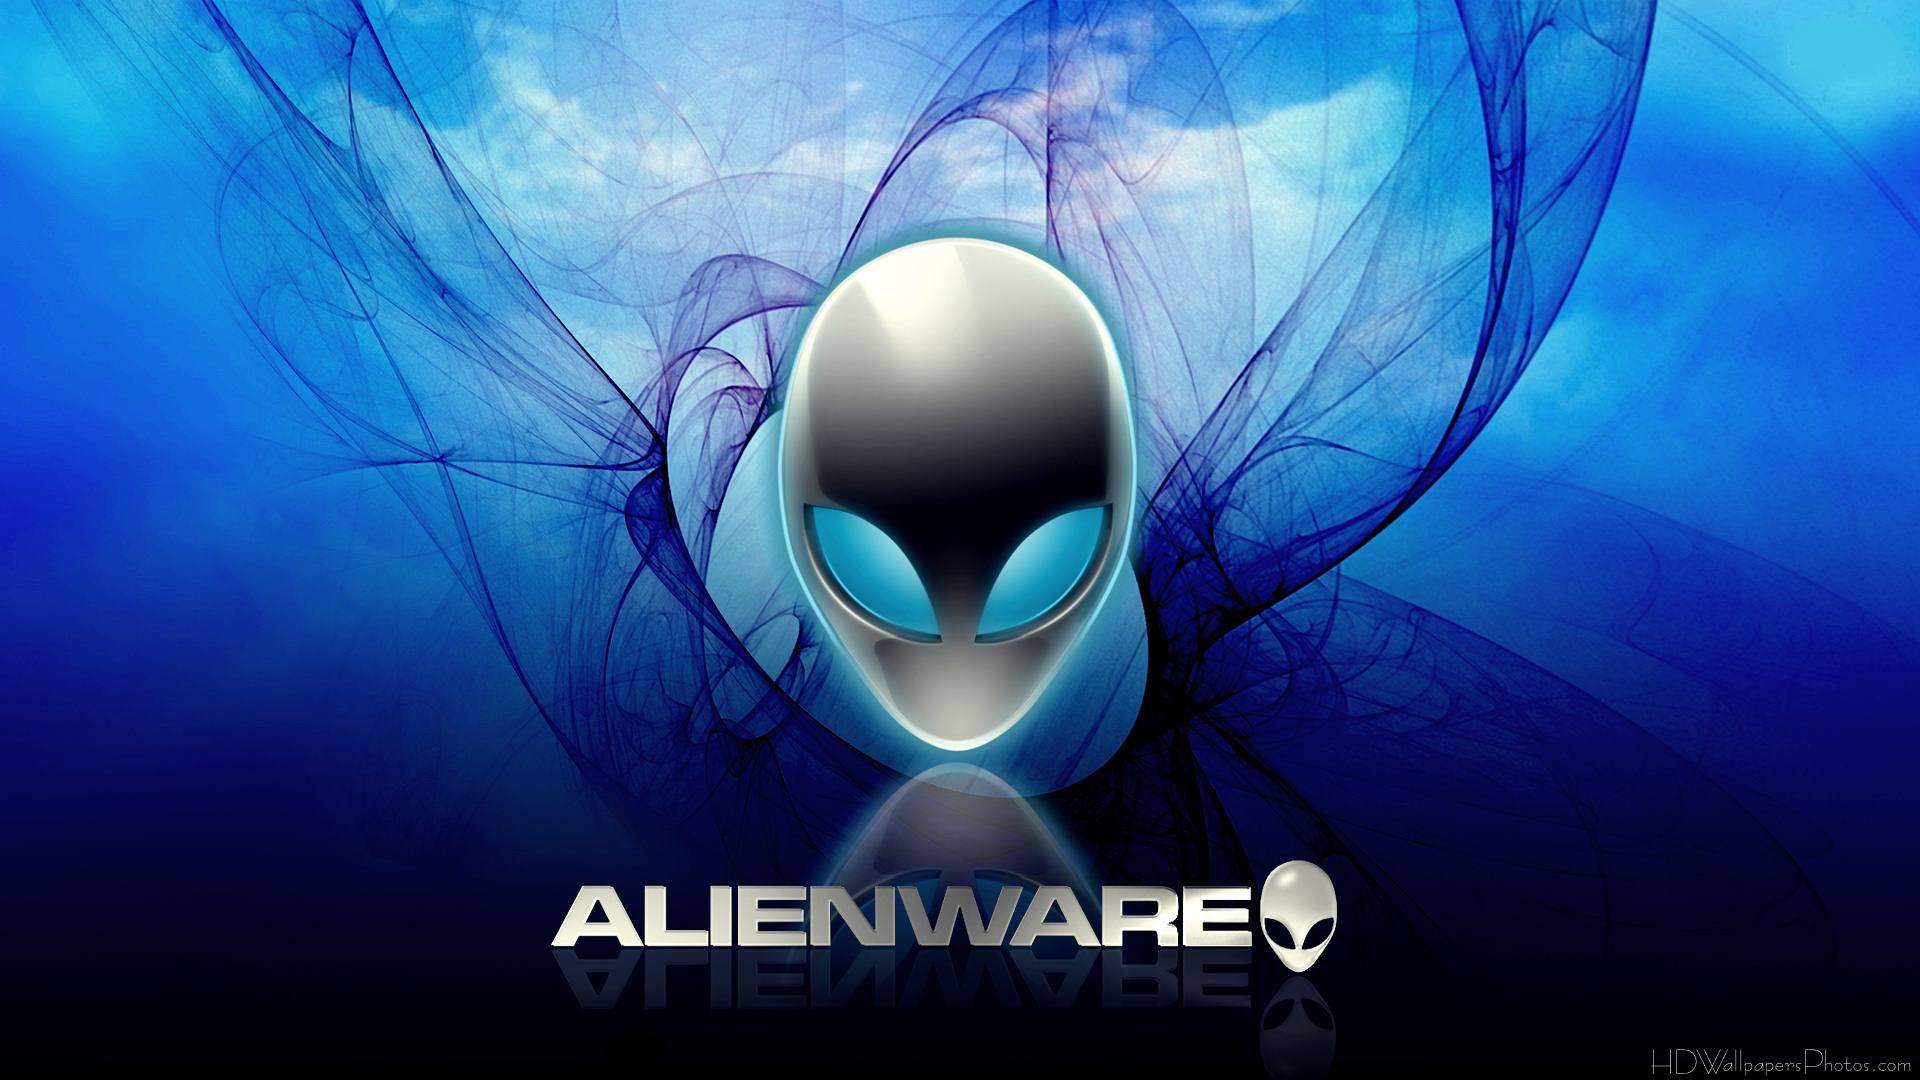 Alienware Desktop Wallpaper HD Image Pictures